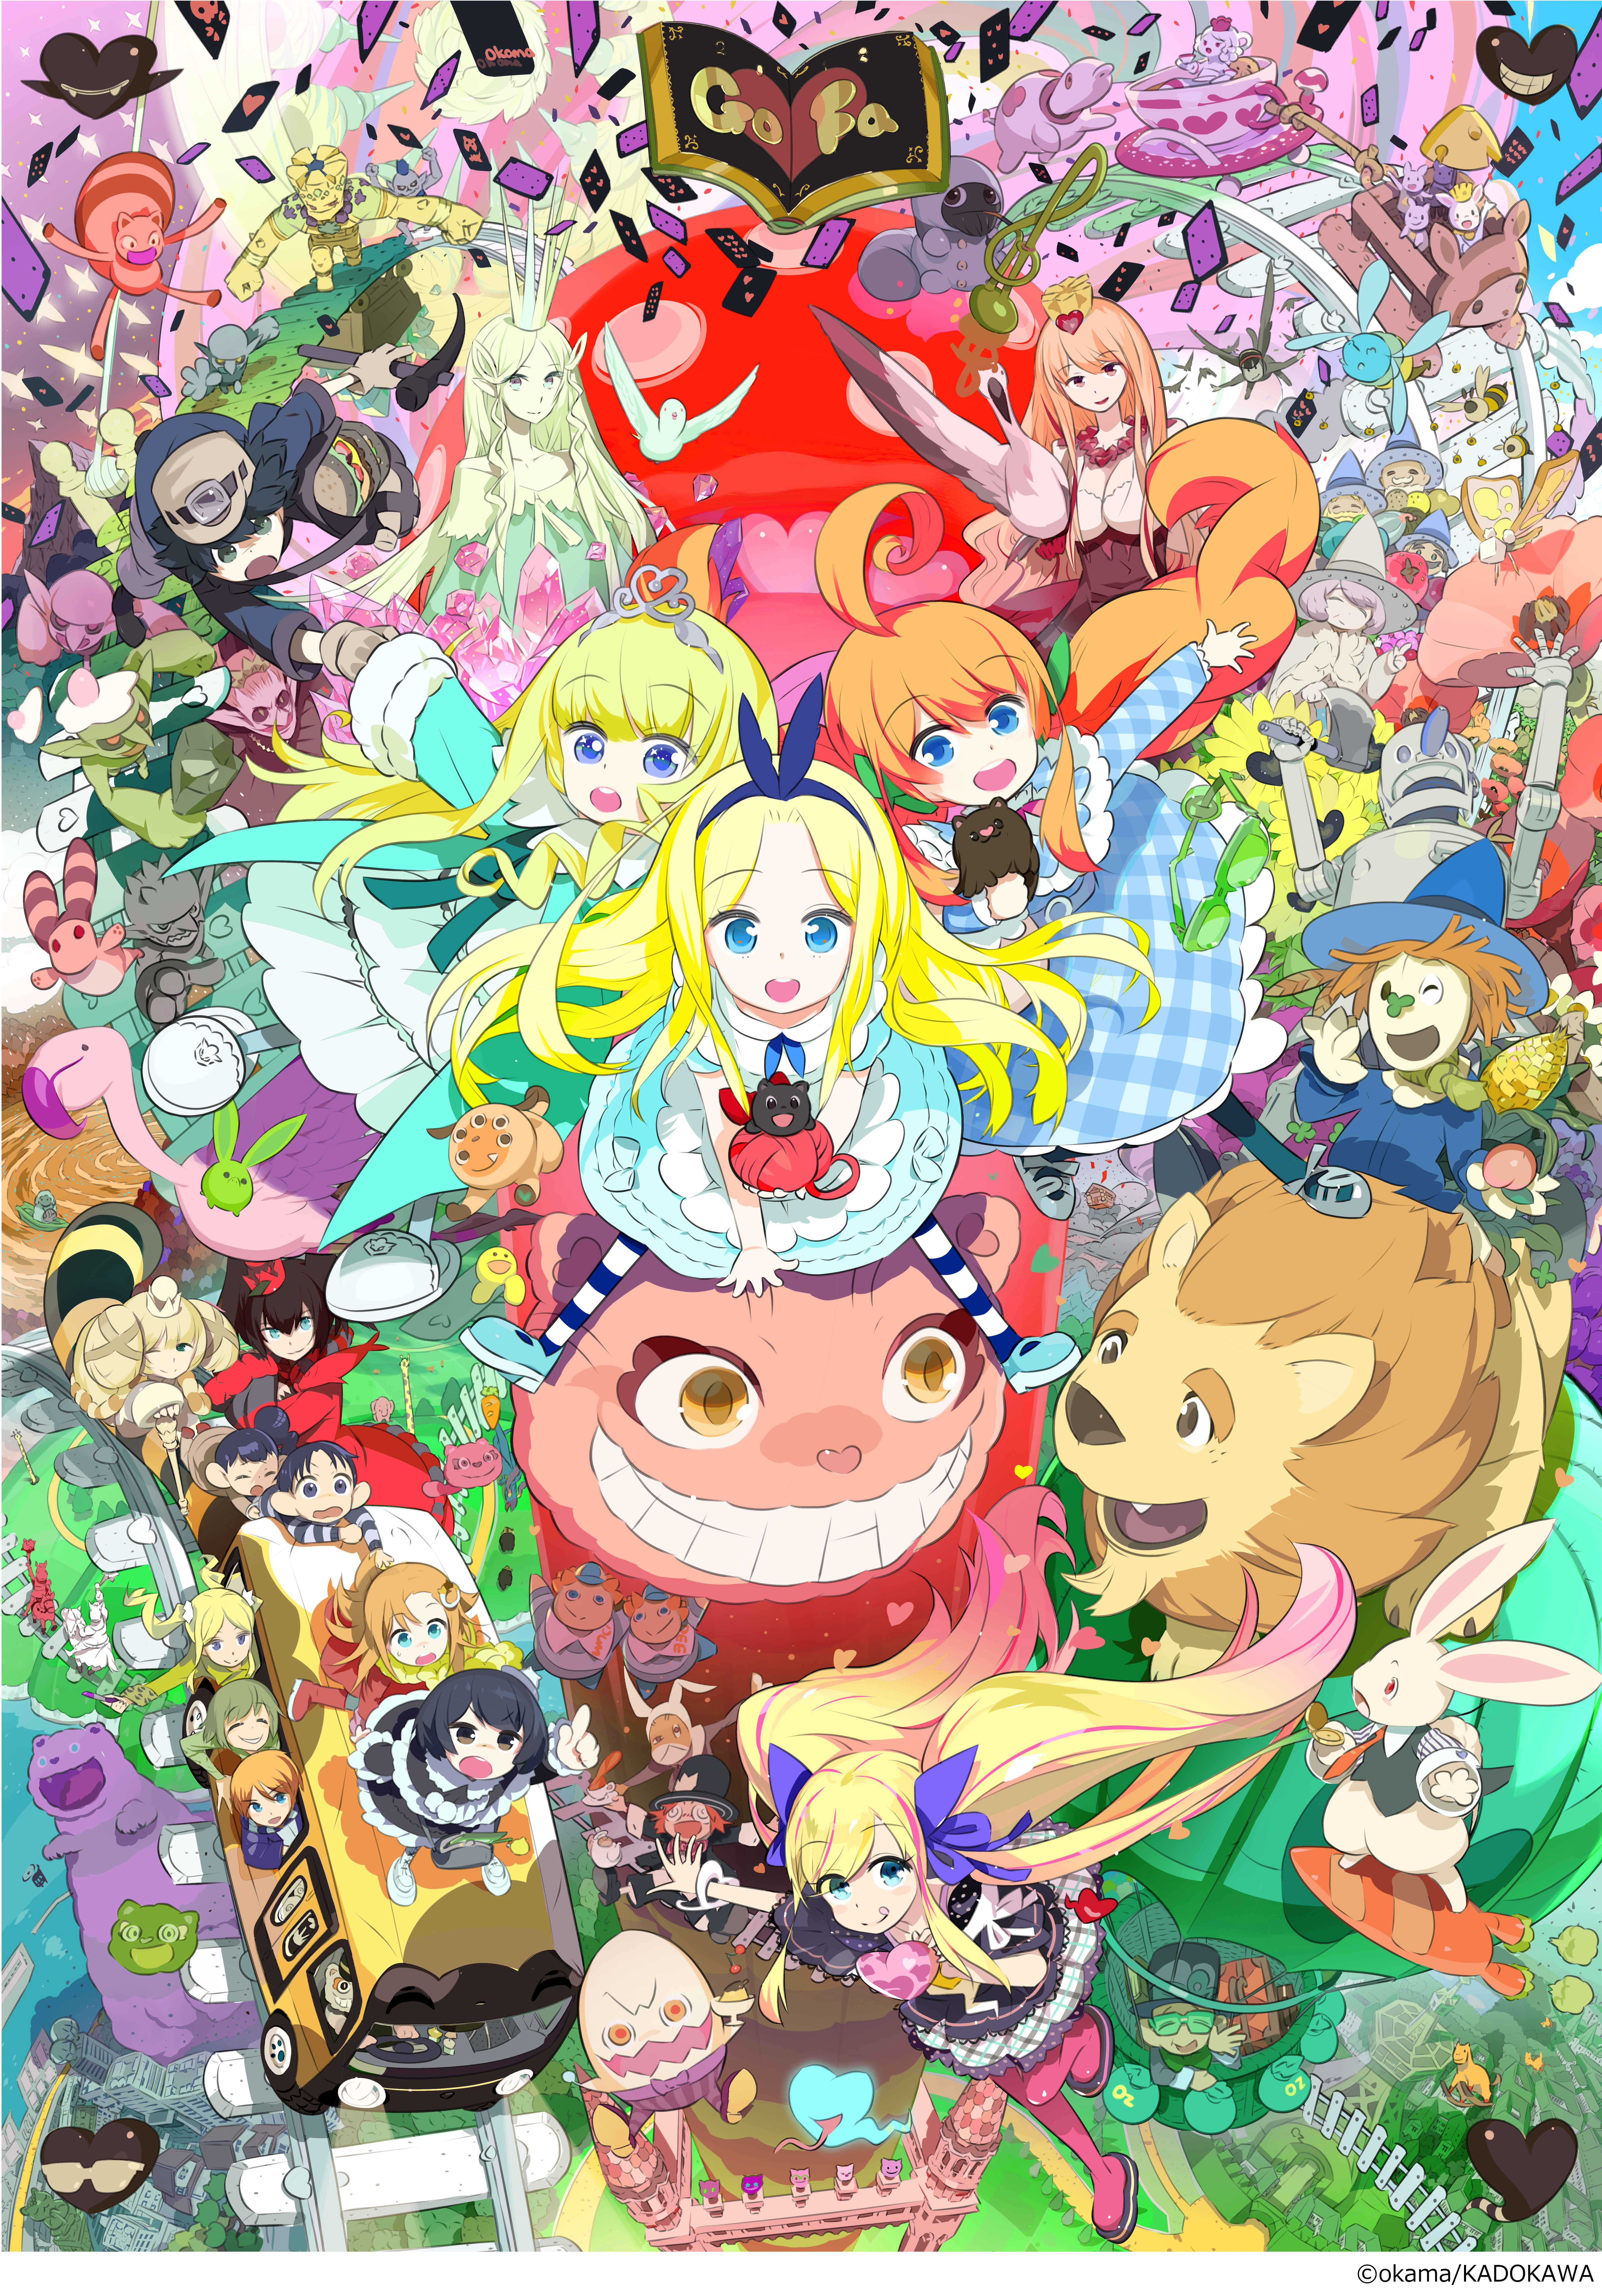 Okamaの描く世界名作 ふしぎの国のアリス オズの魔法使い 展 マットのプレスリリース